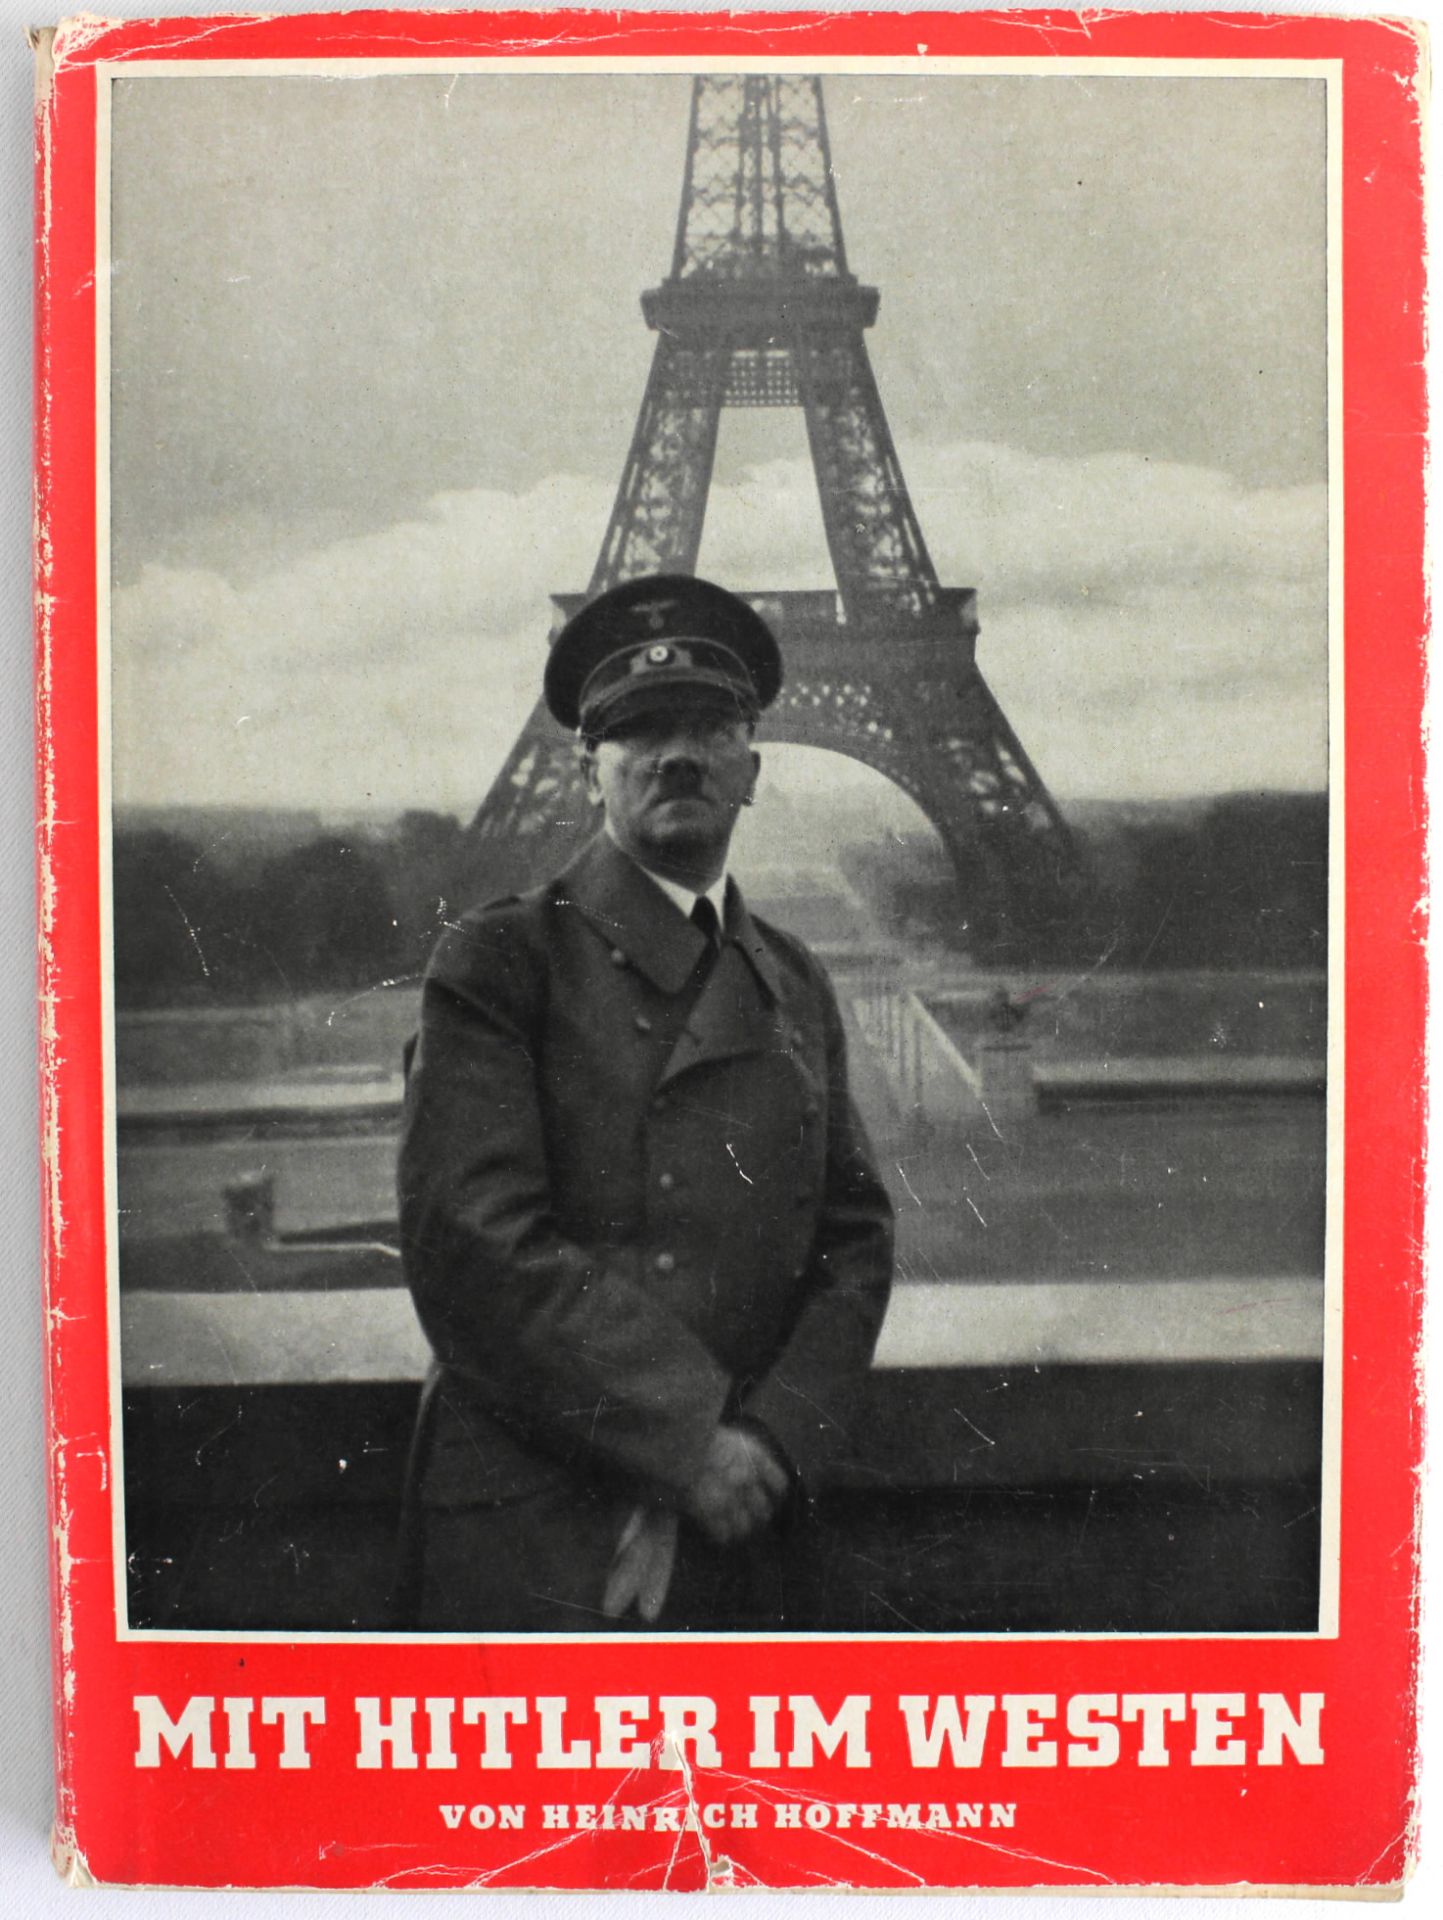 Bildband "Mit Hitler im Westen", Heinrich Hoffmann, mit Widmung, Zeitgeschichte-Verlag 1940